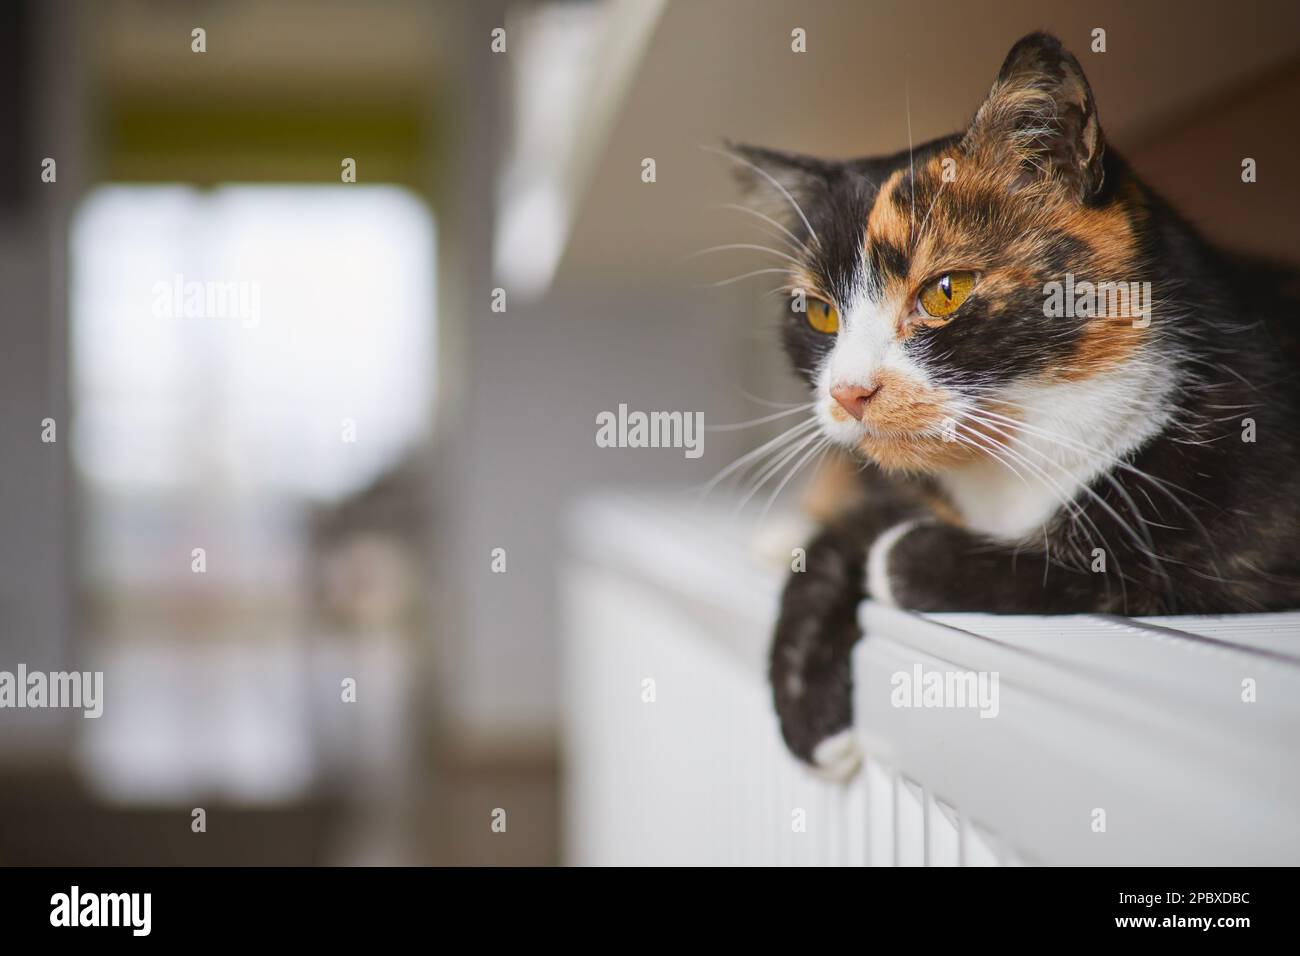 La vie domestique avec les animaux. Portrait de chat mignon tabby en étant allongé sur le chauffage à la maison. Banque D'Images